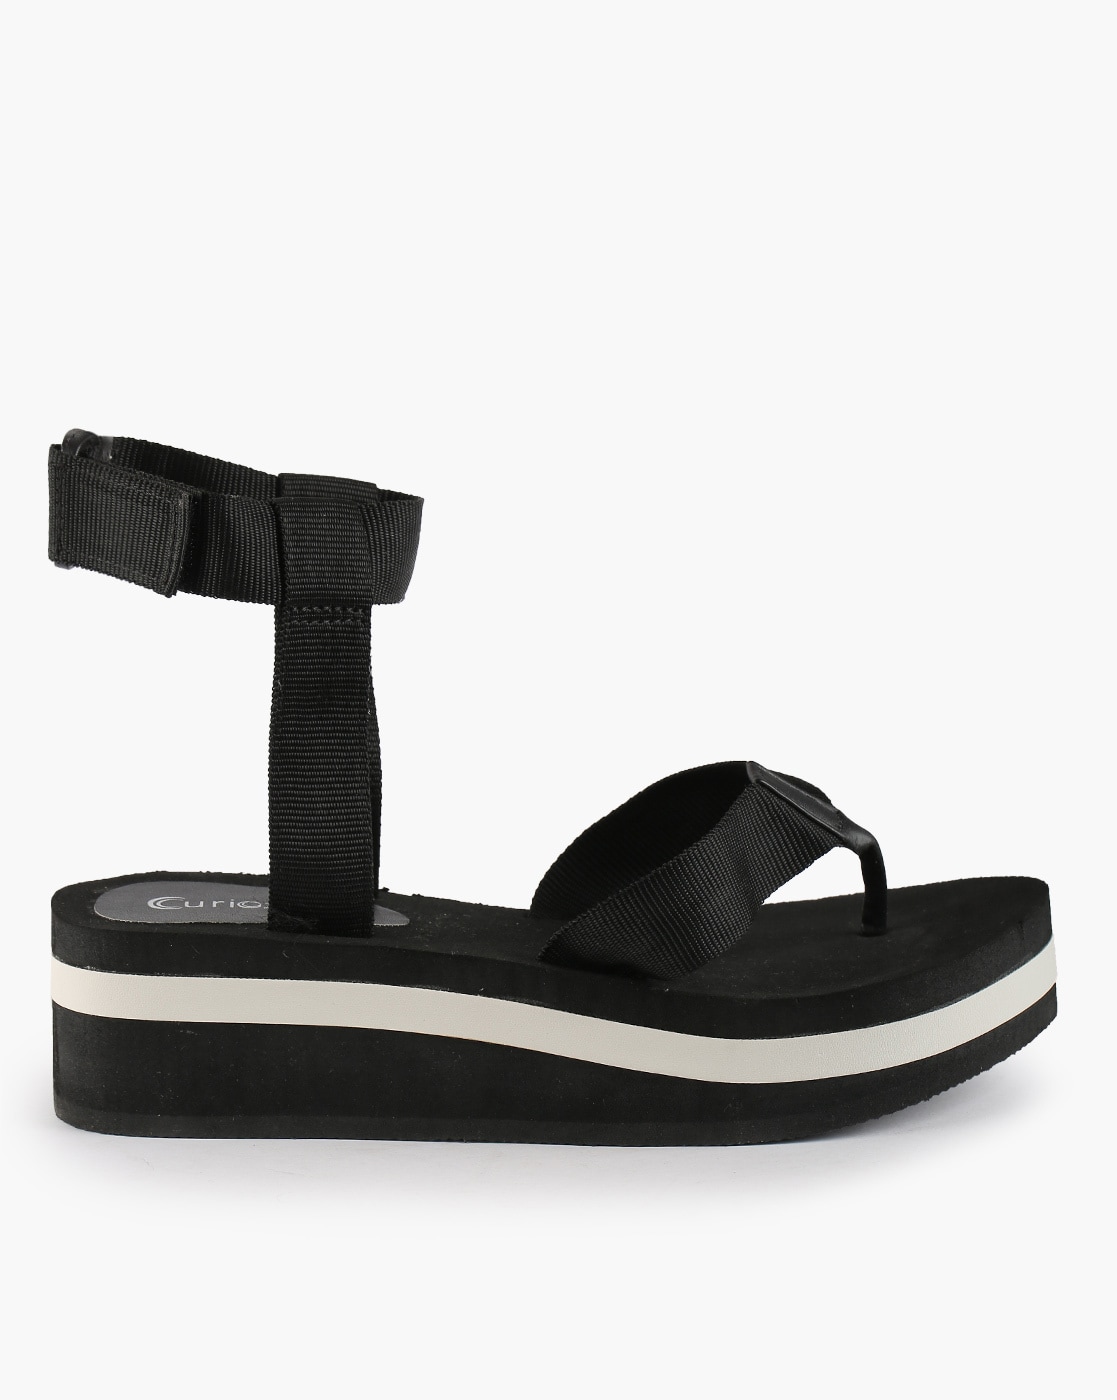 Buy Black Flip Flop \u0026 Slippers for 